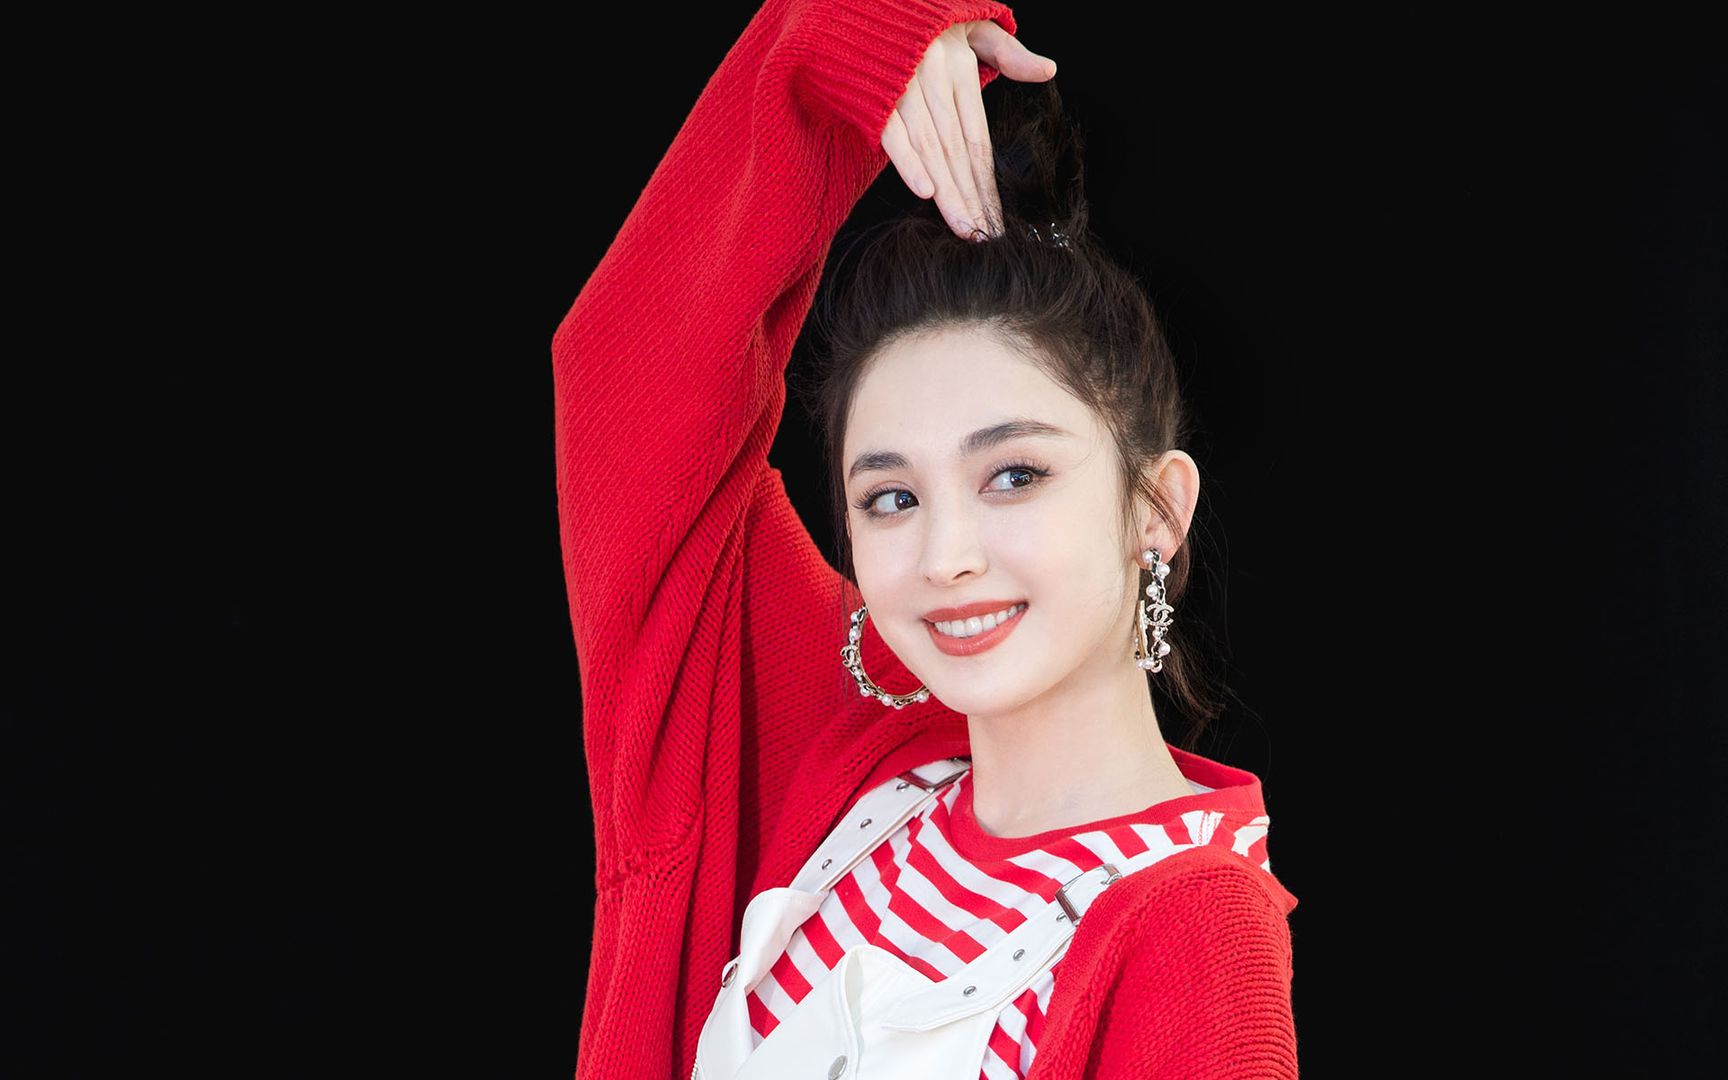 新疆美女古力娜扎烈焰红裙造型抢眼美艳动人高清壁纸